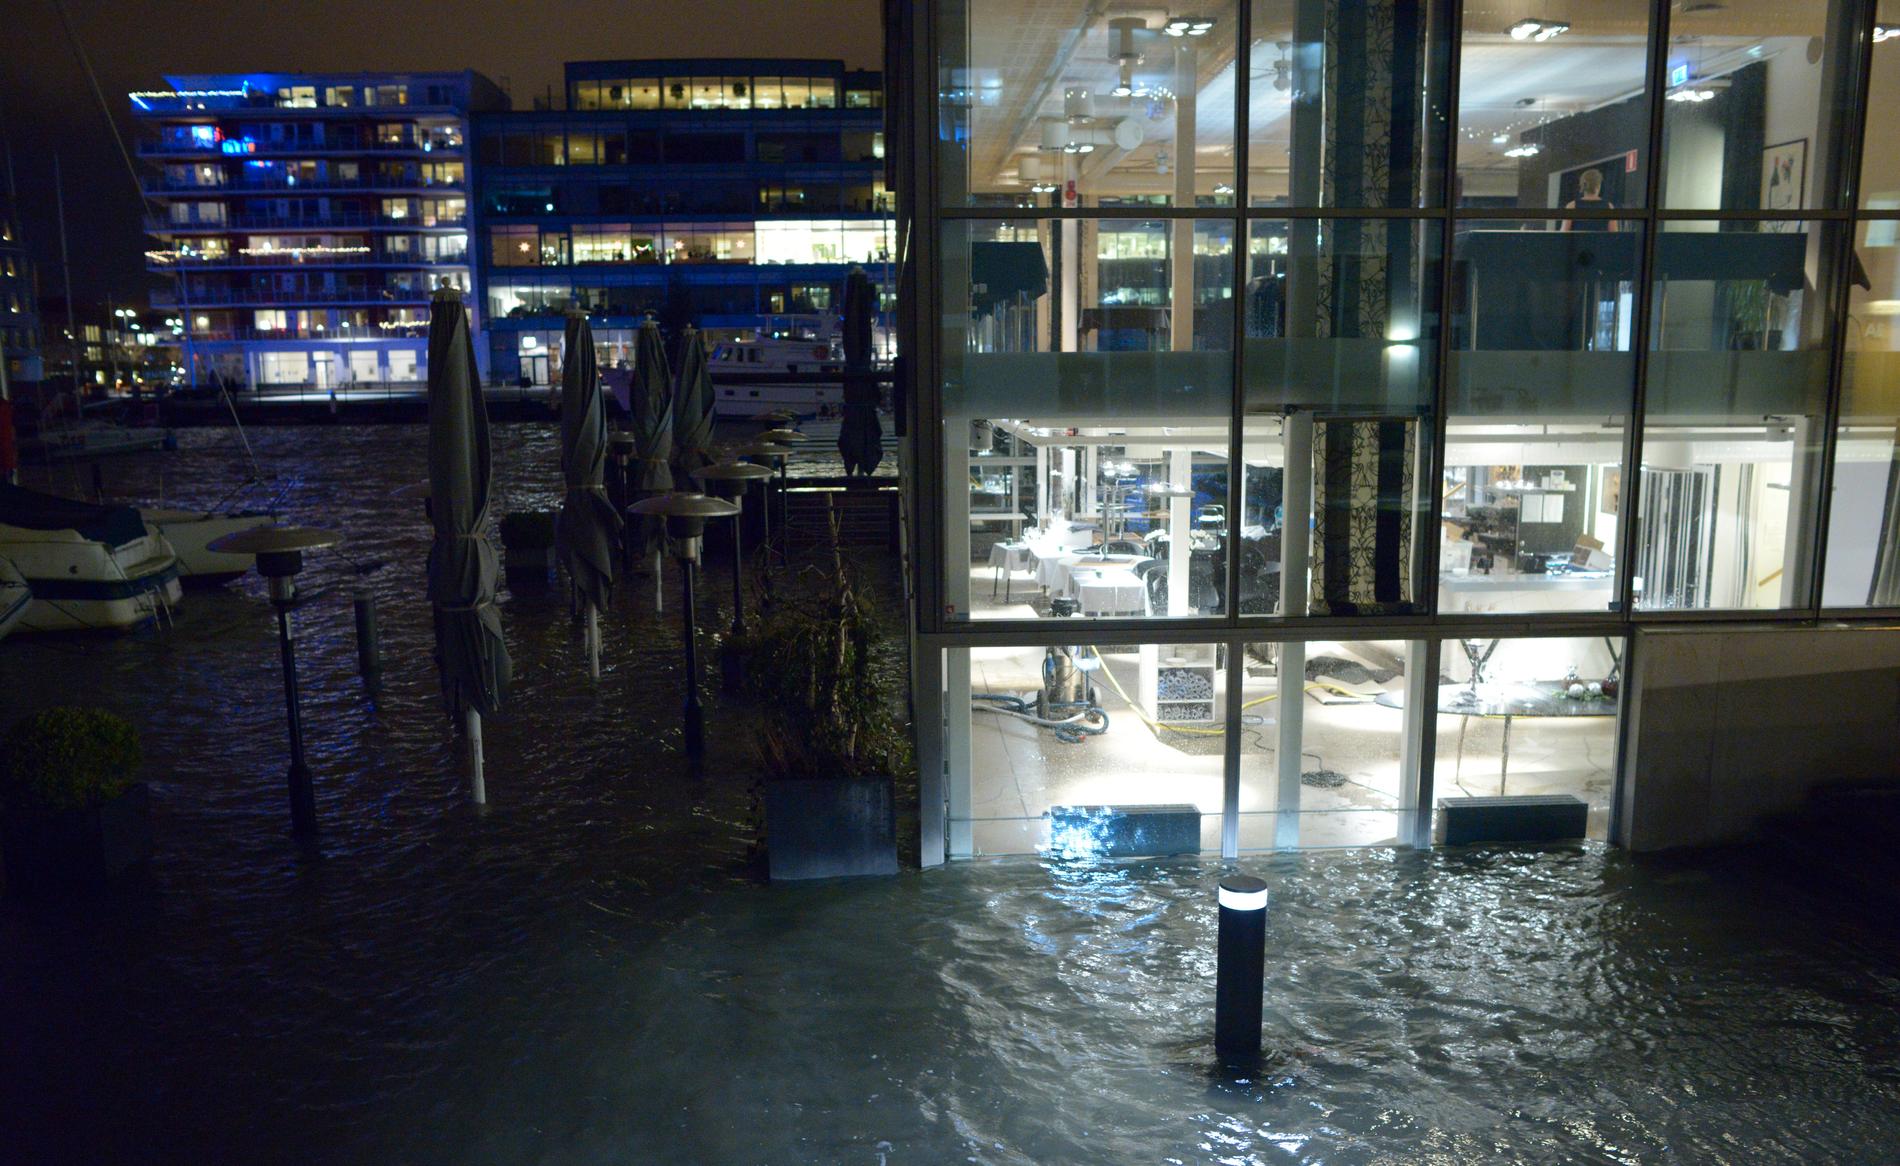 Högt vatten vid en restaurang i Dockan i Malmö 6 december 2013, då stormen Sven härjade. Som högst nådde Öresunds vatten 1,40 meter över det normala i Malmö och dränkte med råge bryggorna i Dockan.